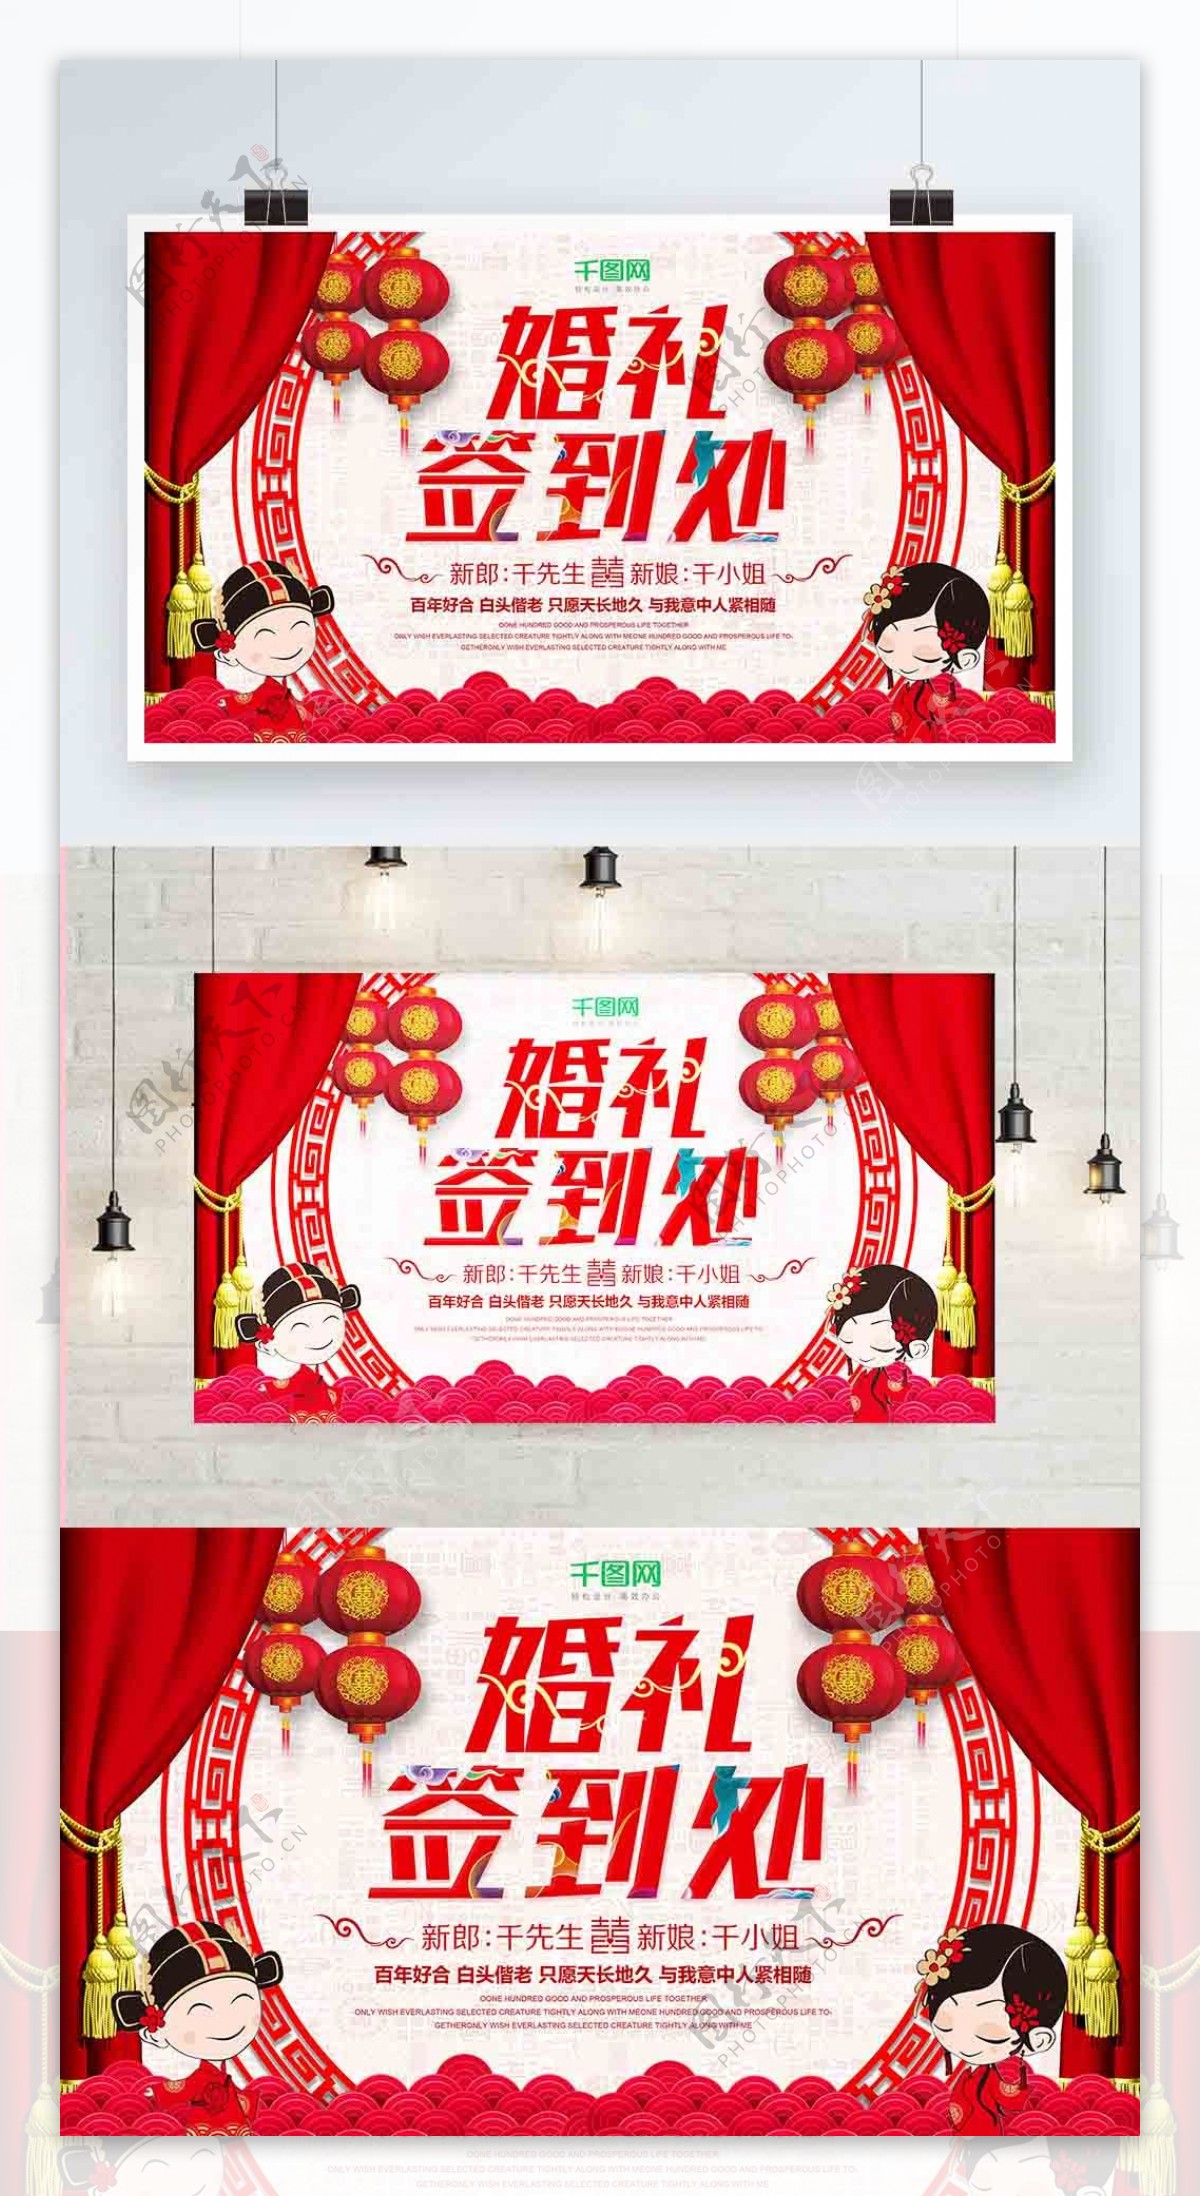 创意传统中式红色婚礼签到处展板设计